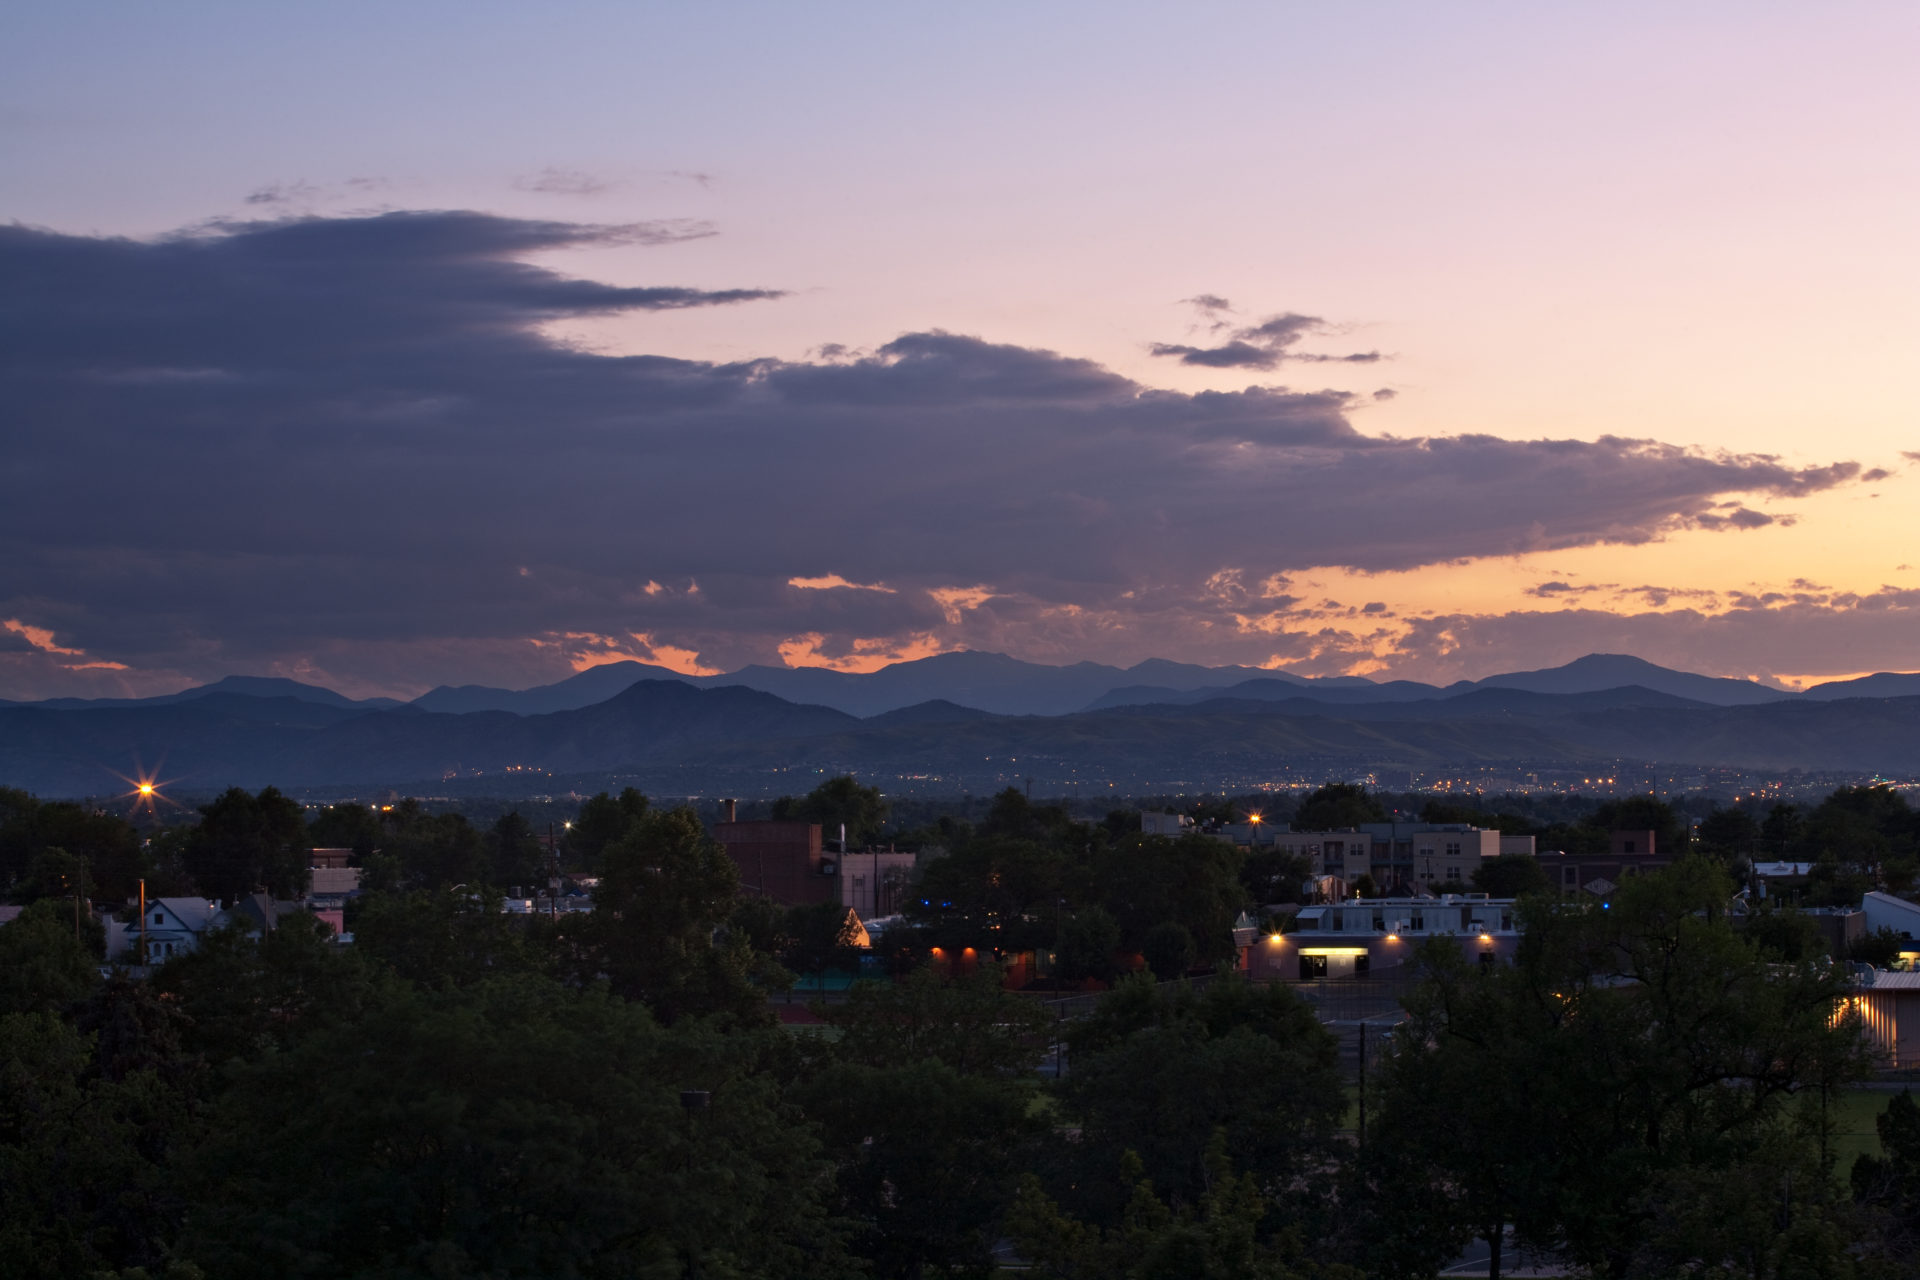 Mount Evans sunset - July 24, 2011